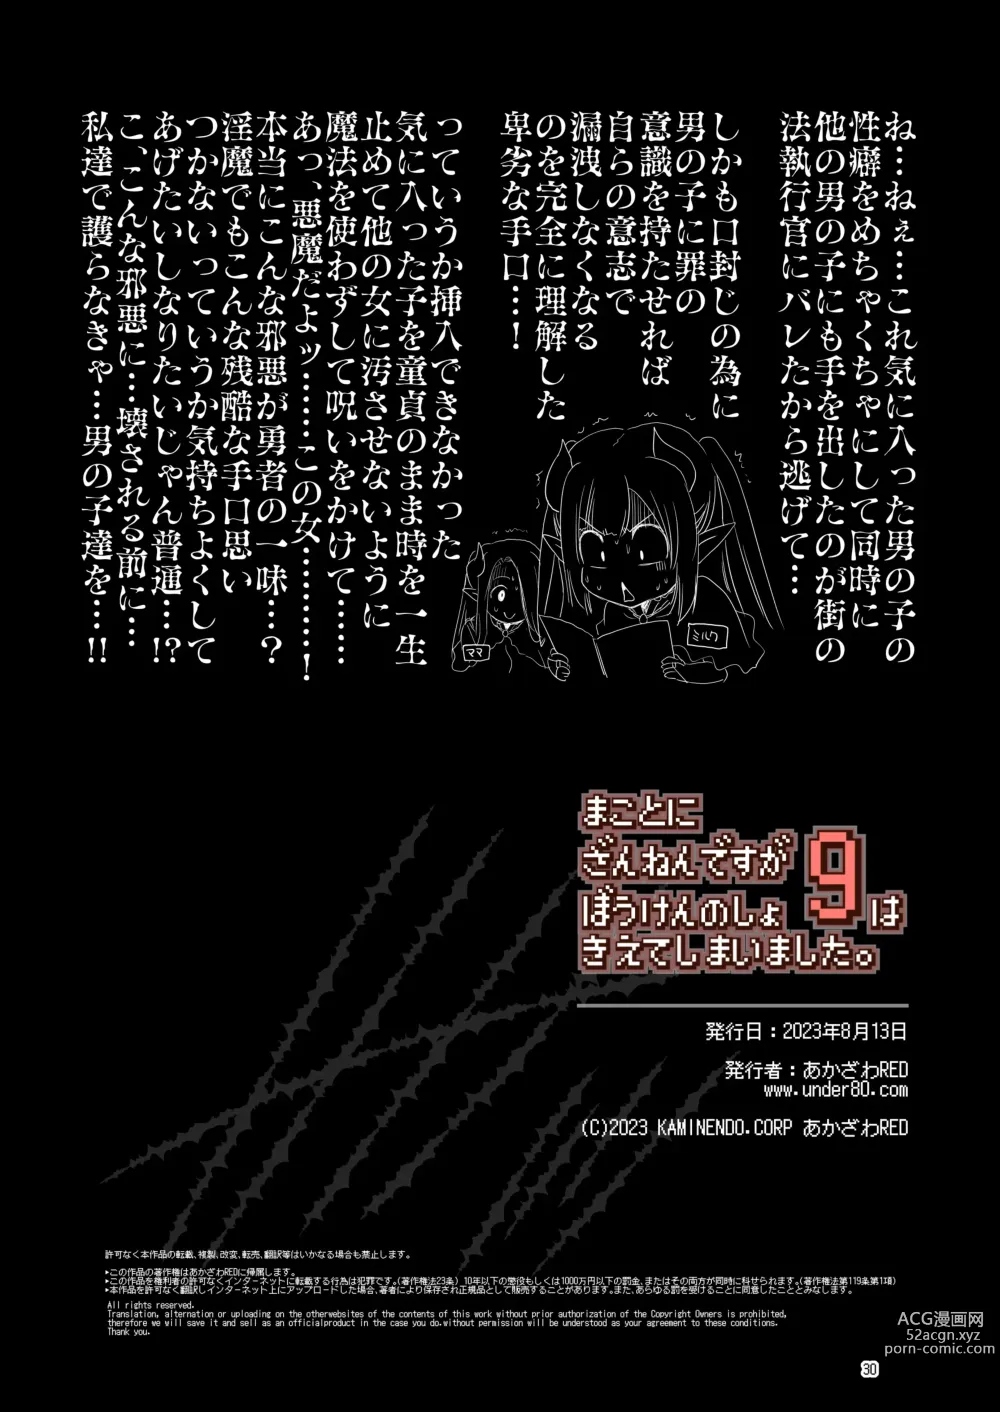 Page 30 of doujinshi Makotoni Zannen desu ga Bouken no Sho 9 wa Kiete Shimaimashita.